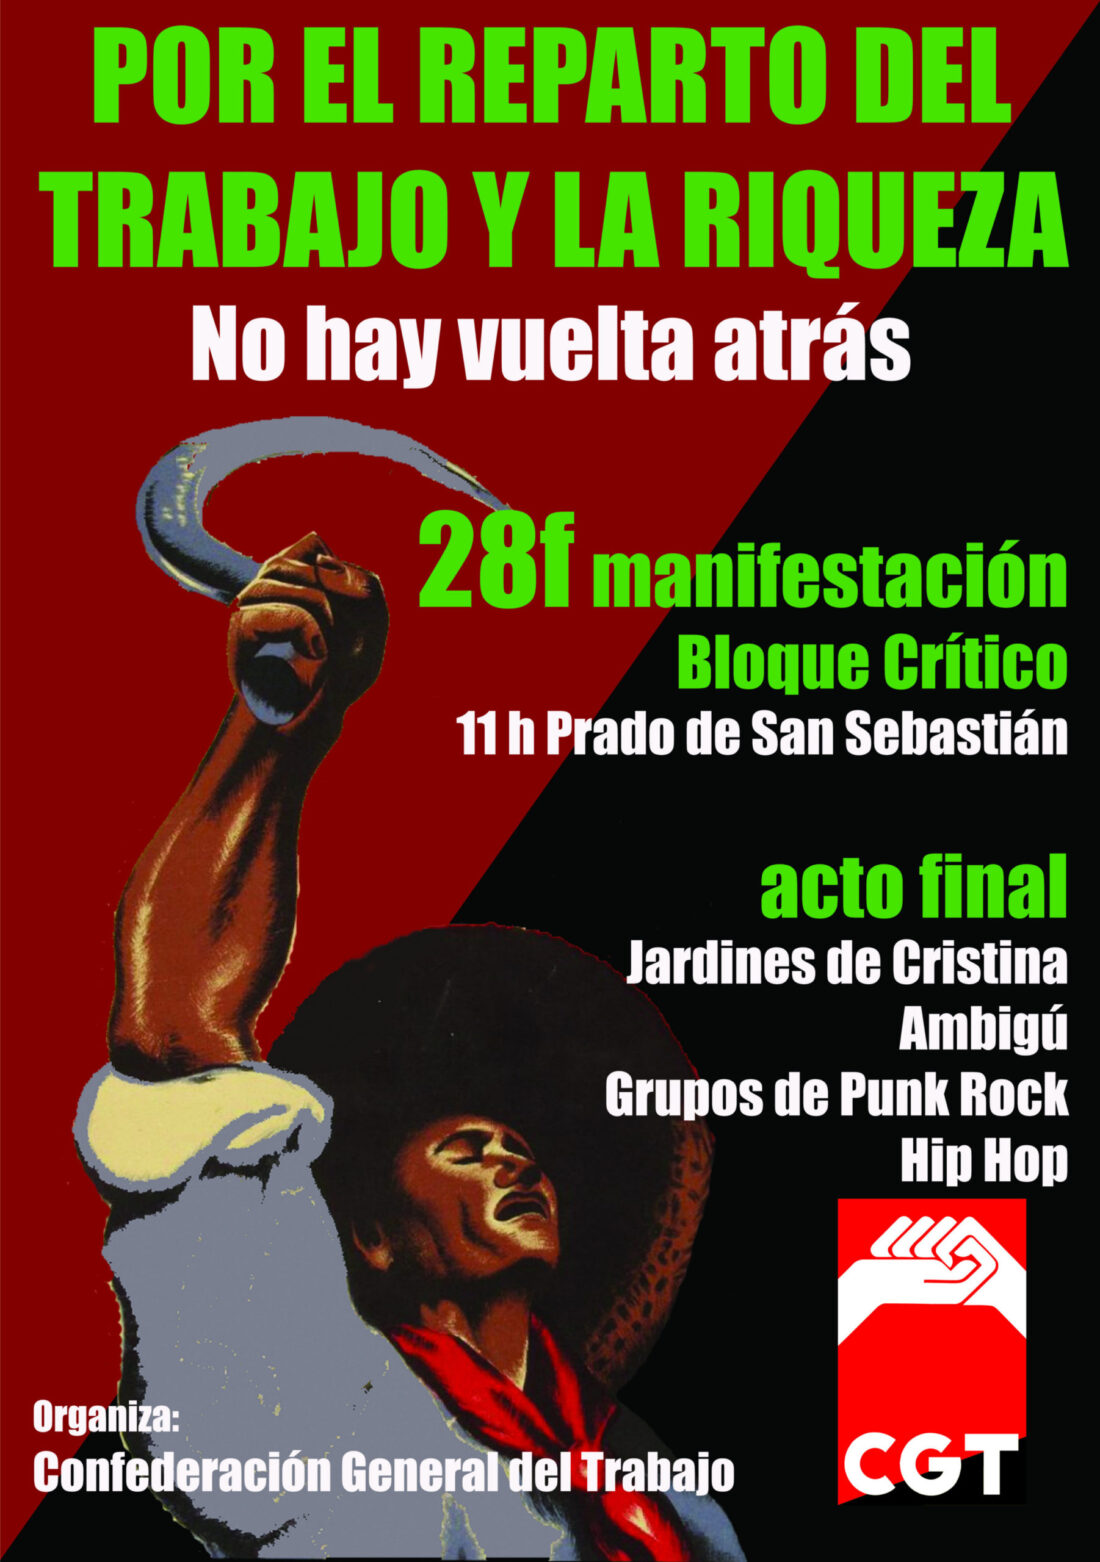 28f: Manifestación del bloque crítico en Sevilla